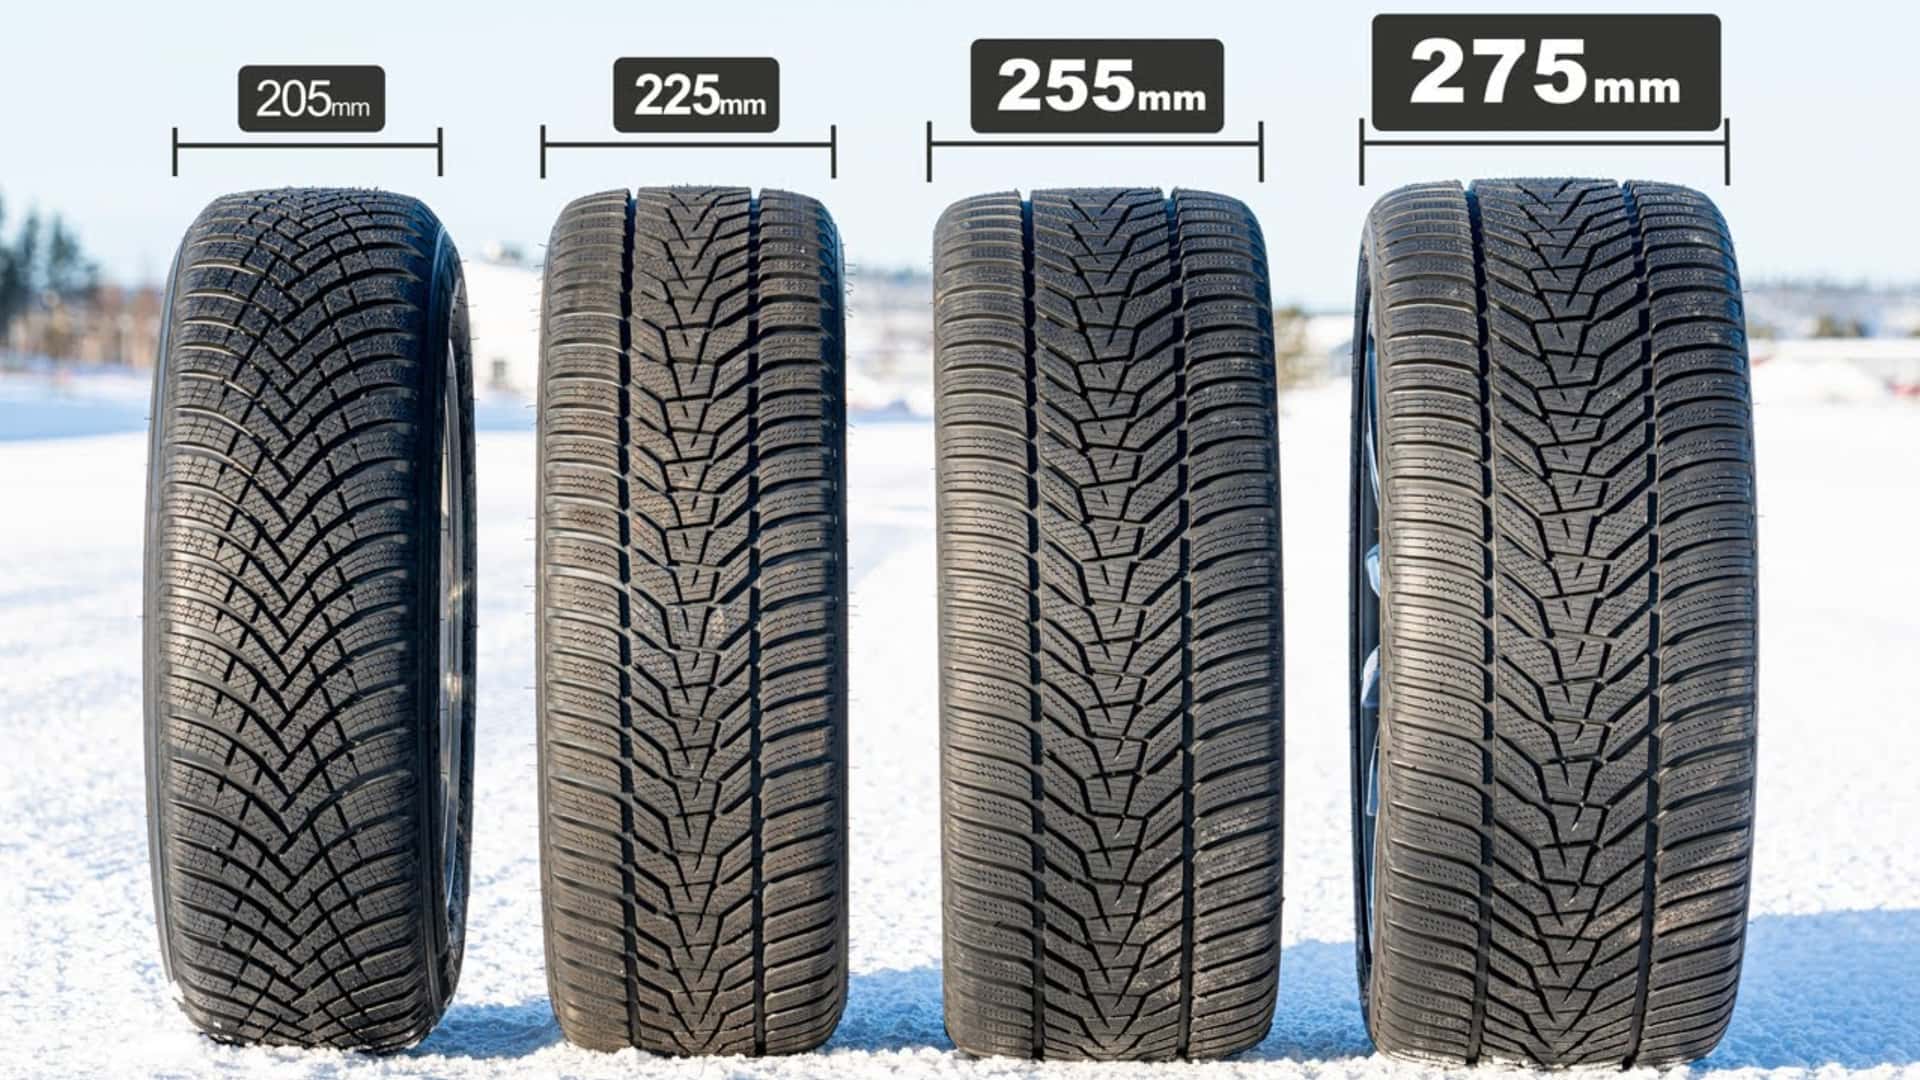 Široke proti ozkim zimskim pnevmatikam: pravzaprav ni pomembno, kaj boste izbrali